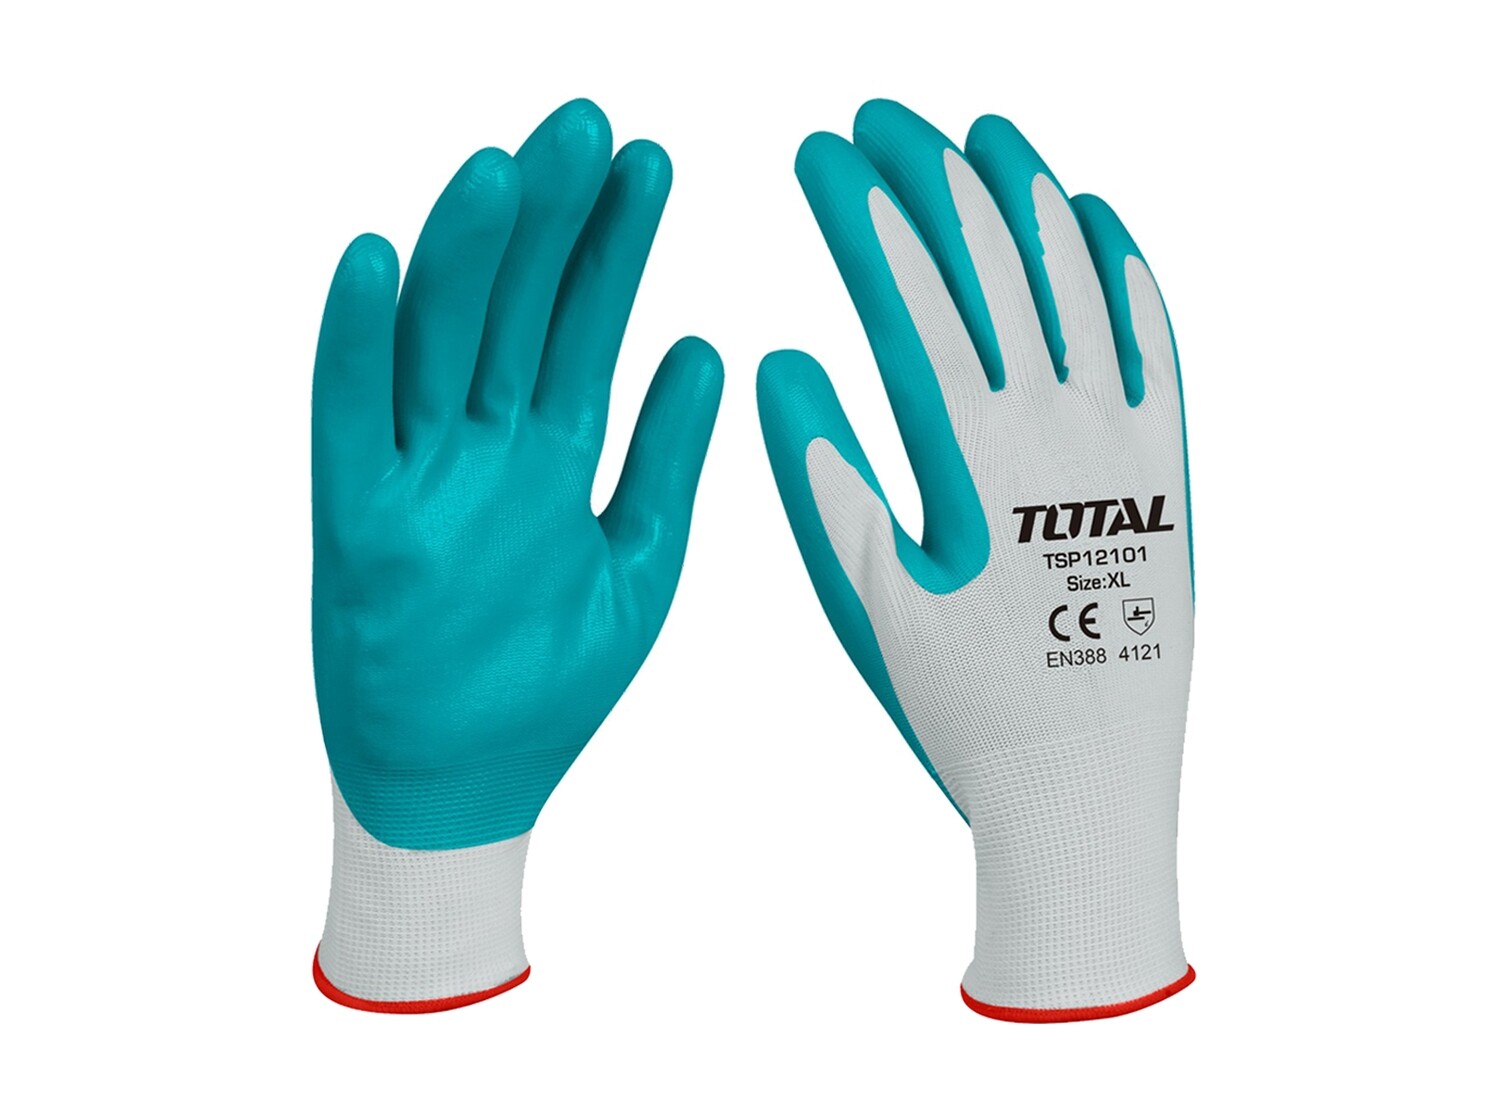 Total Nitrile Gloves (1Pair) - TSP12101